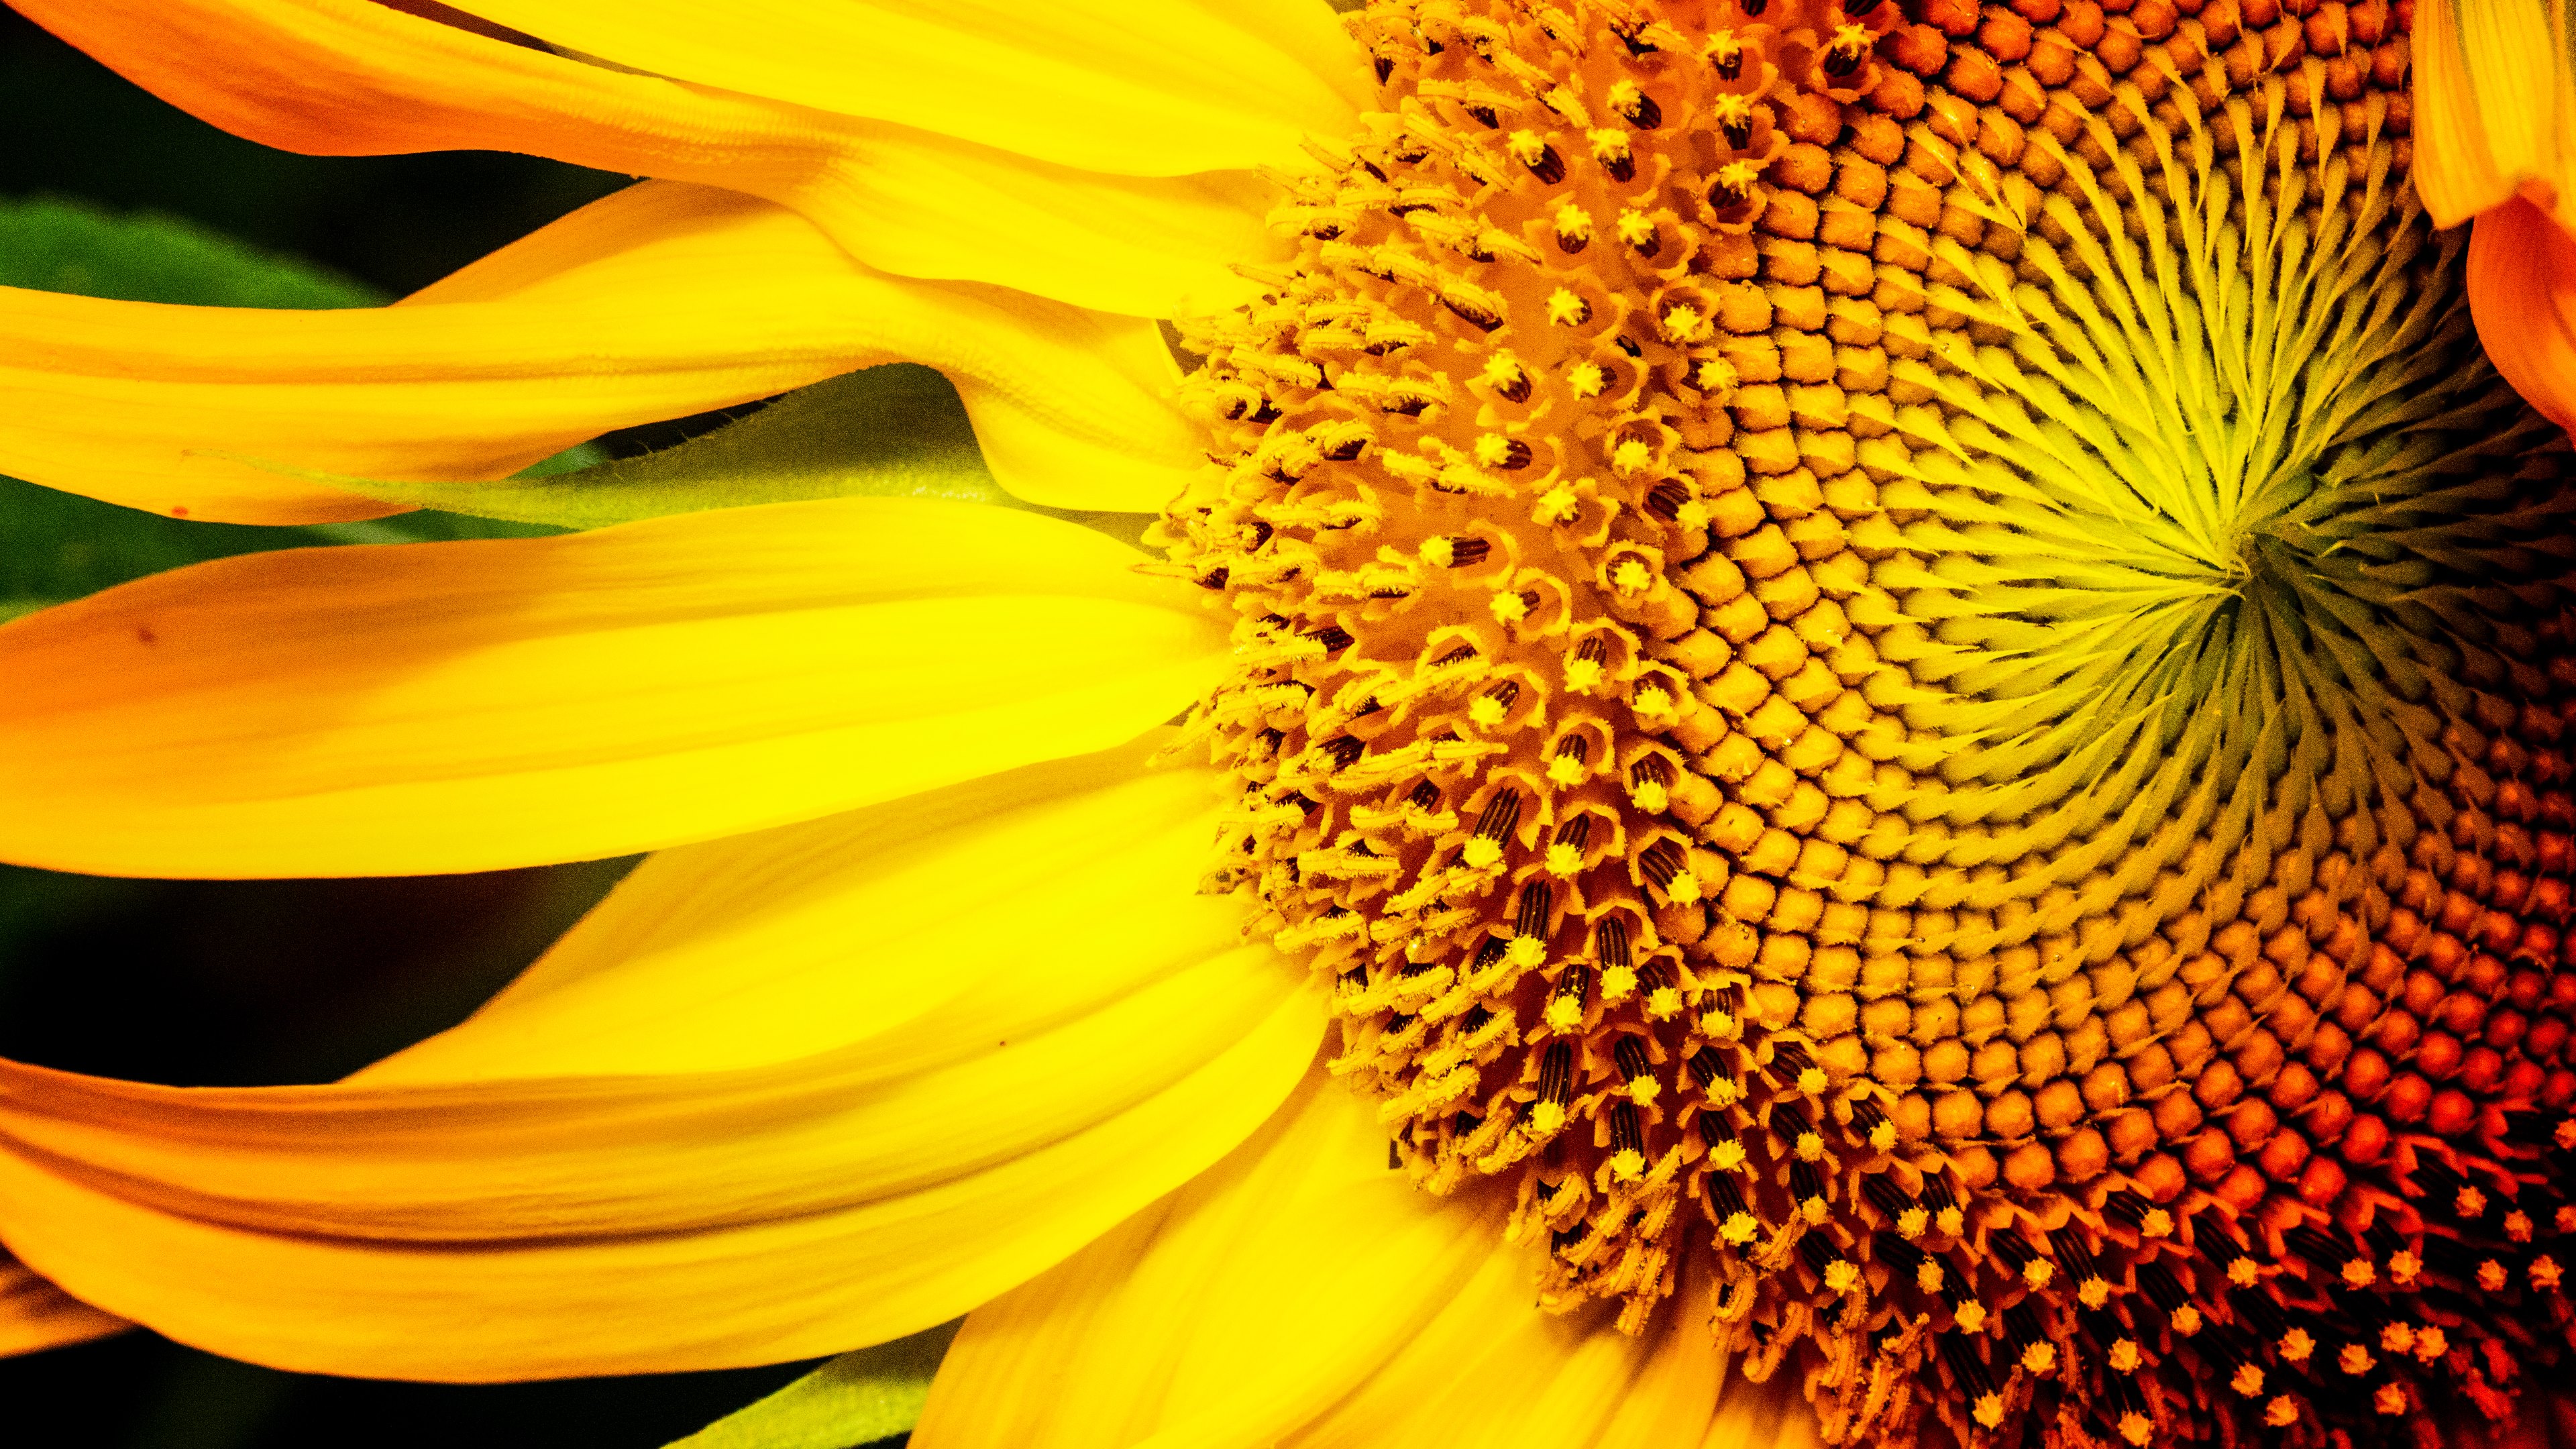 Sunflower 4k Ultra HD Wallpaper By Jim Lukach